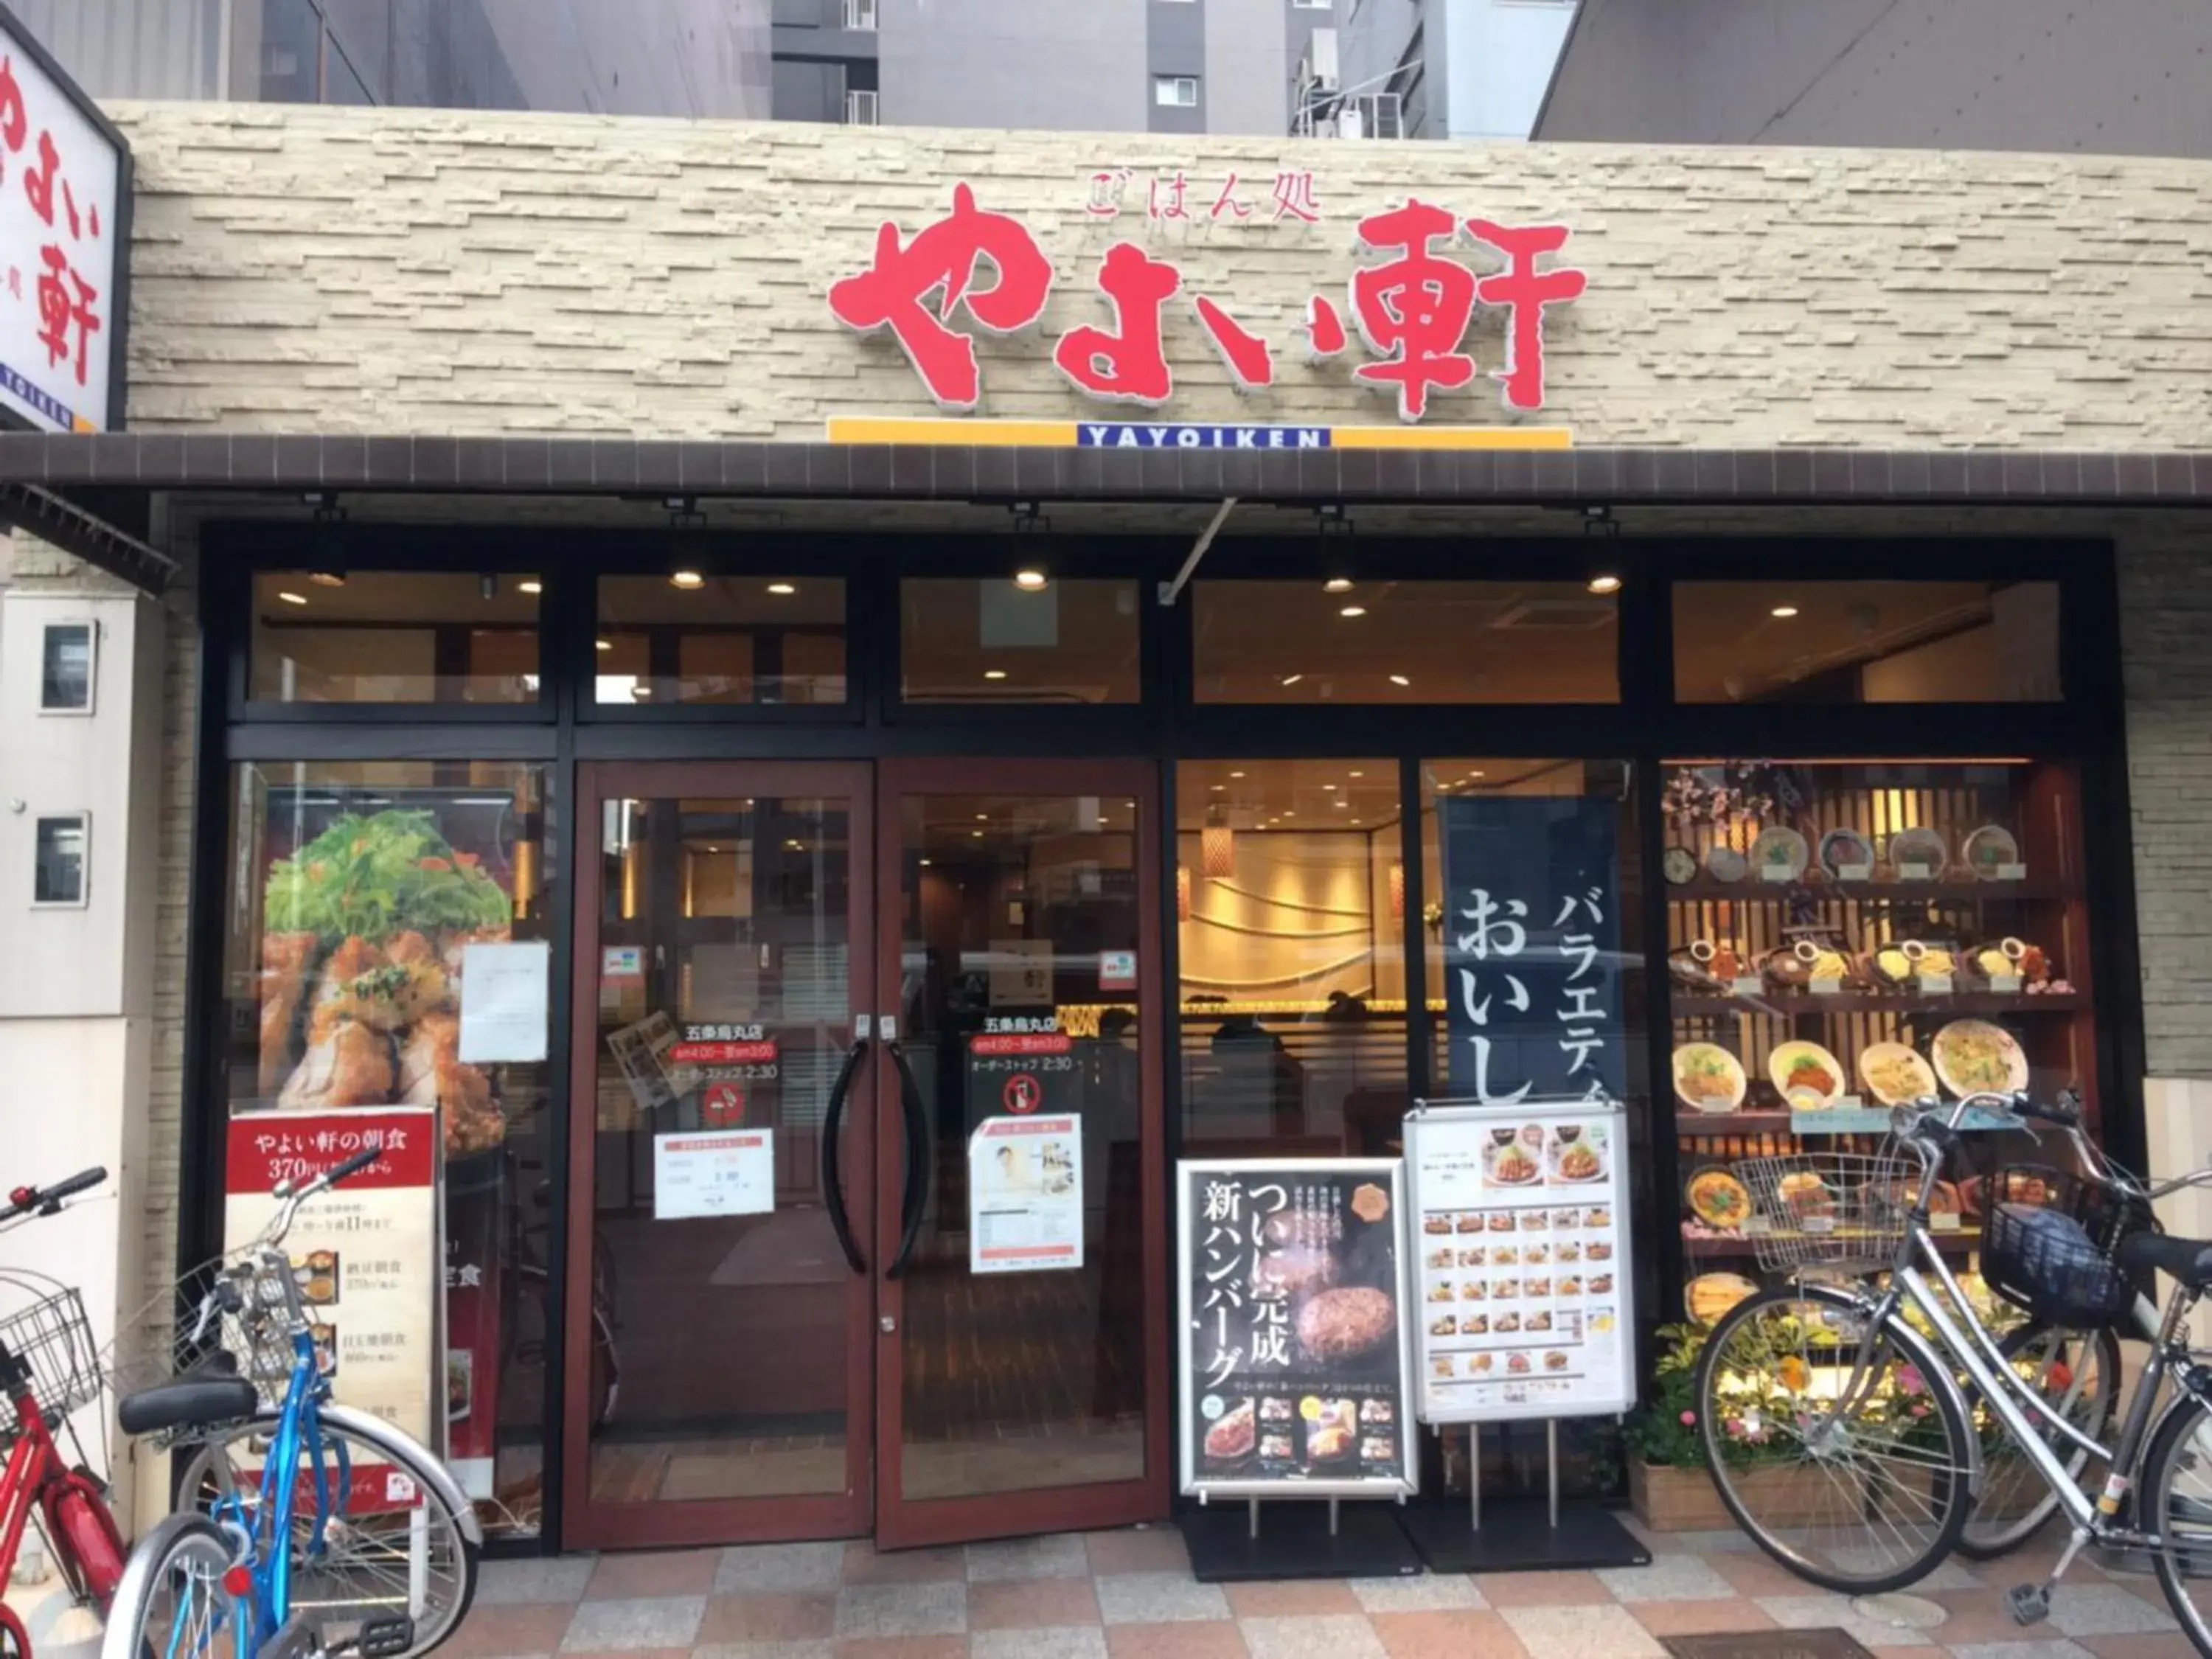 Restaurant/places to eat in Aya inn Karasuma gojo